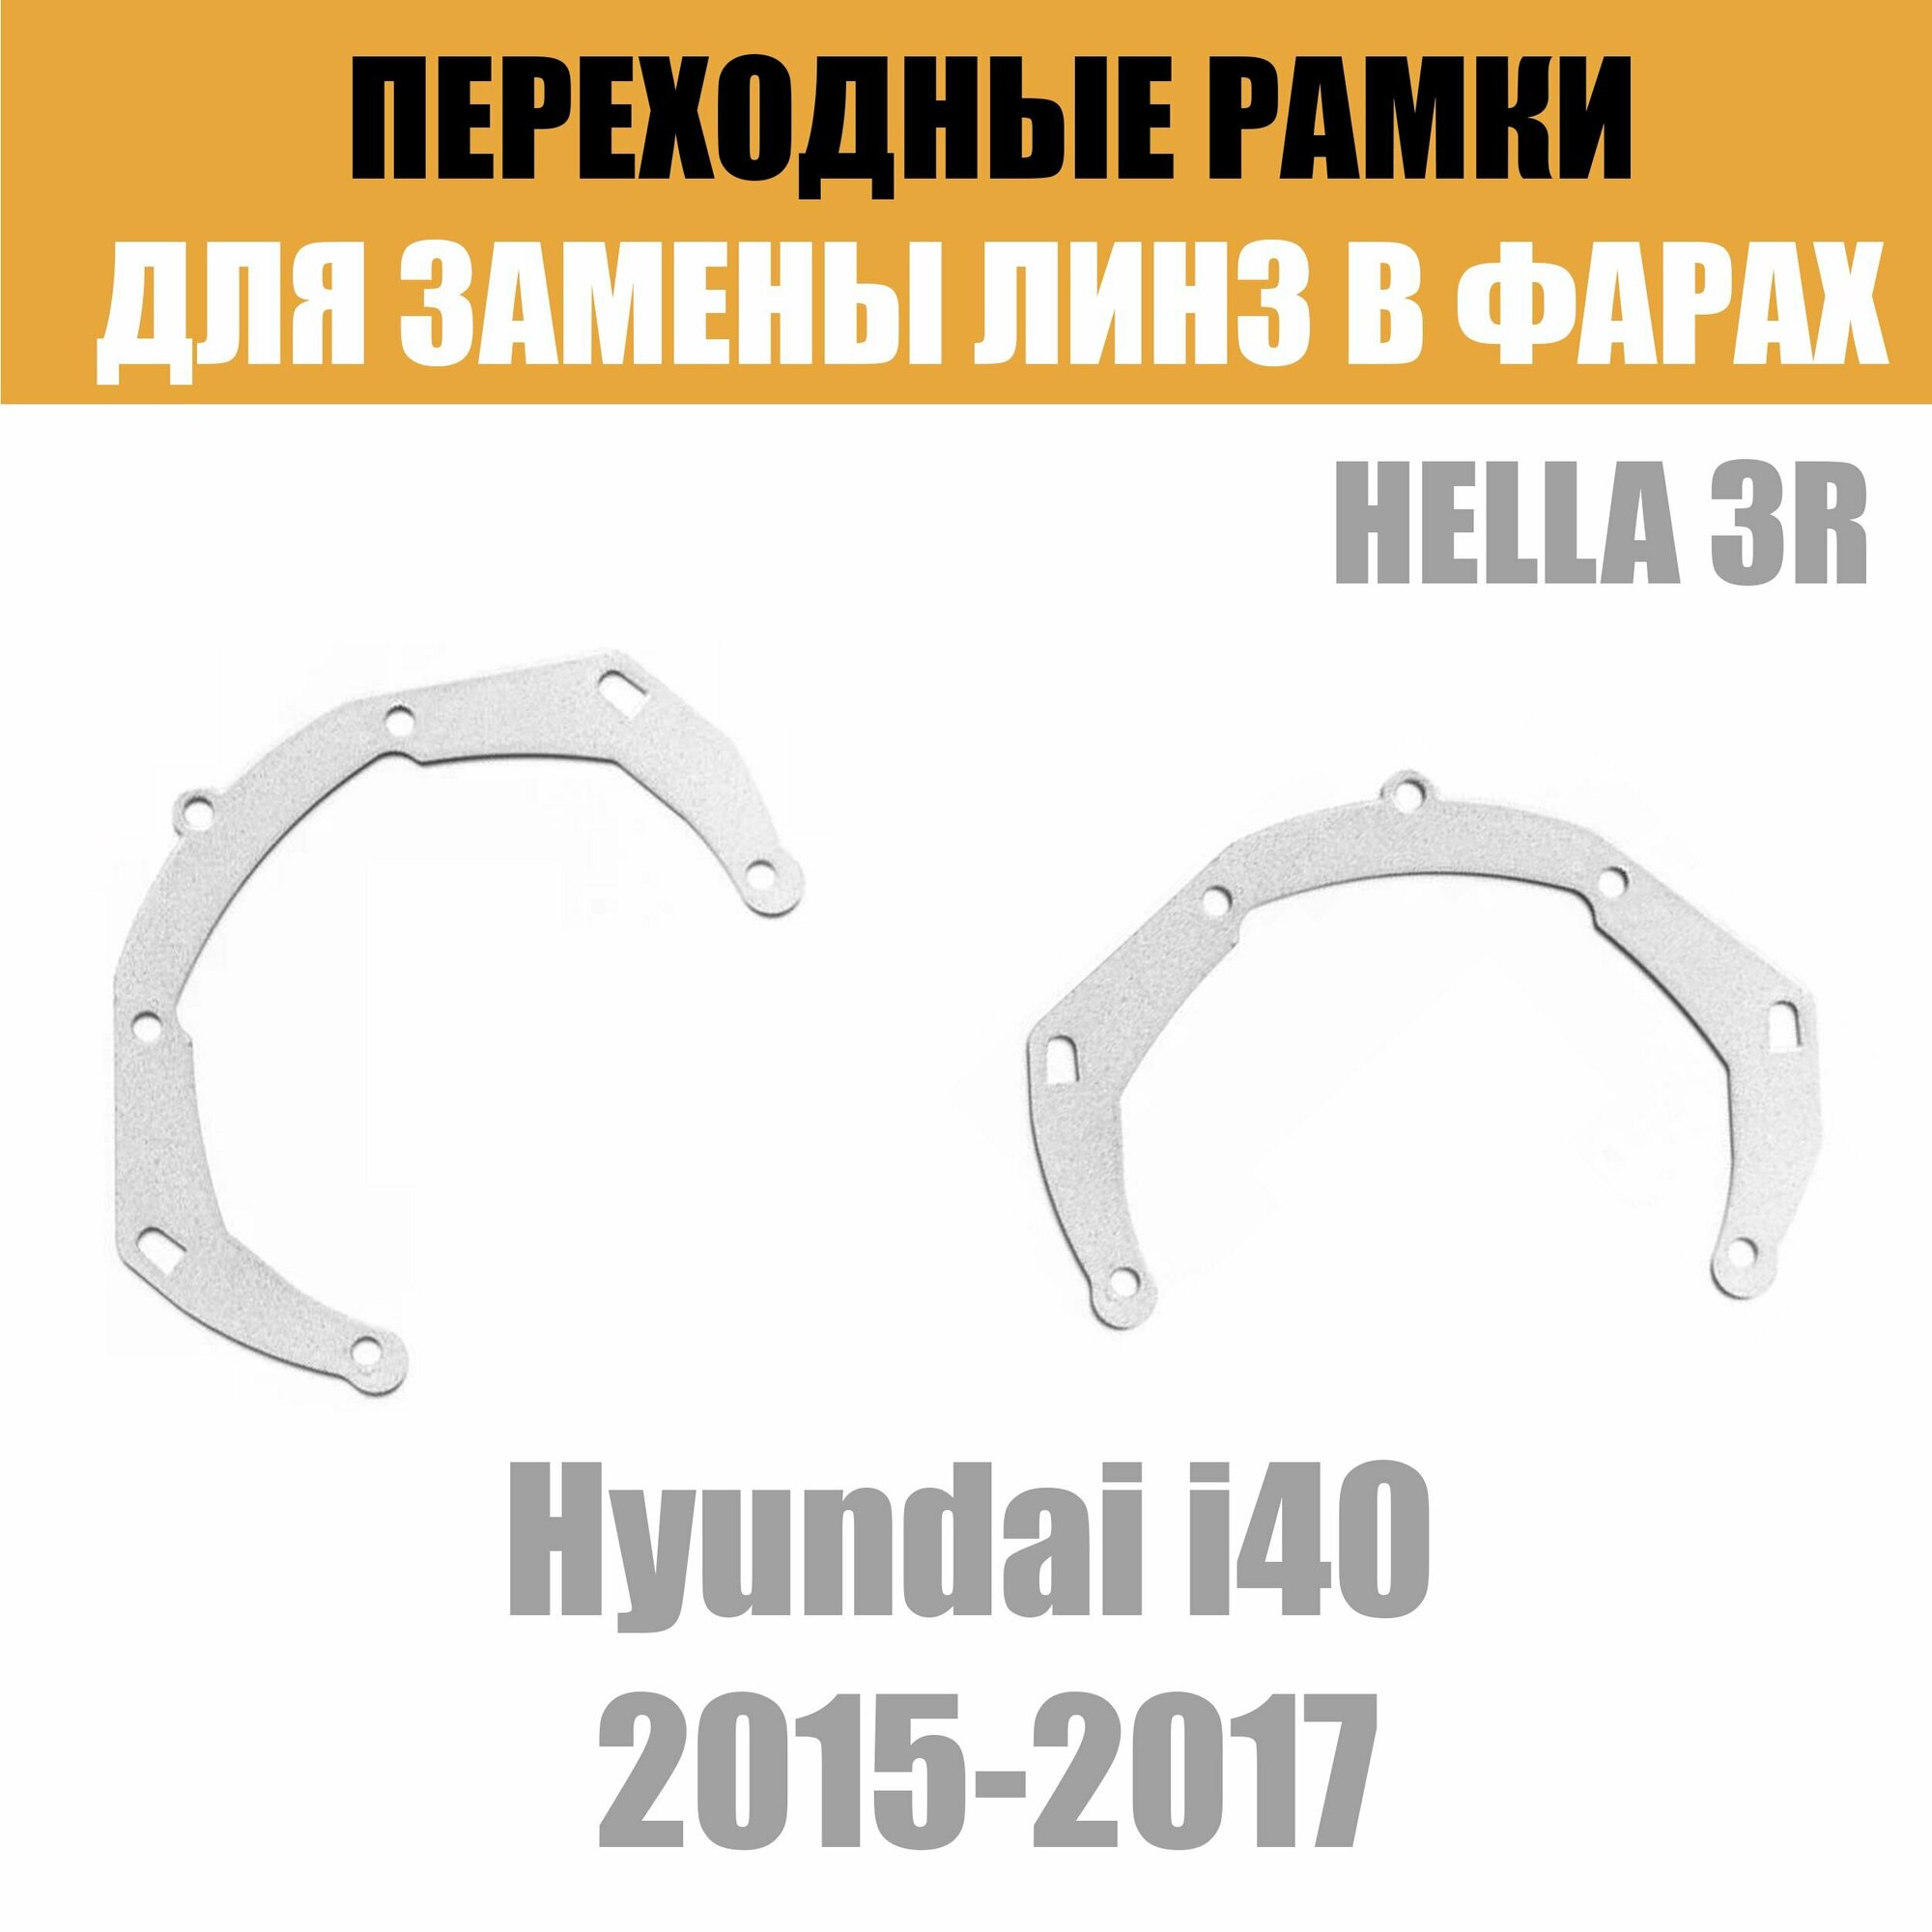 Переходные рамки для линз №3 на Hyundai i40 (2015-2017) под модуль Hella 3R/Hella 3 (Комплект 2шт)